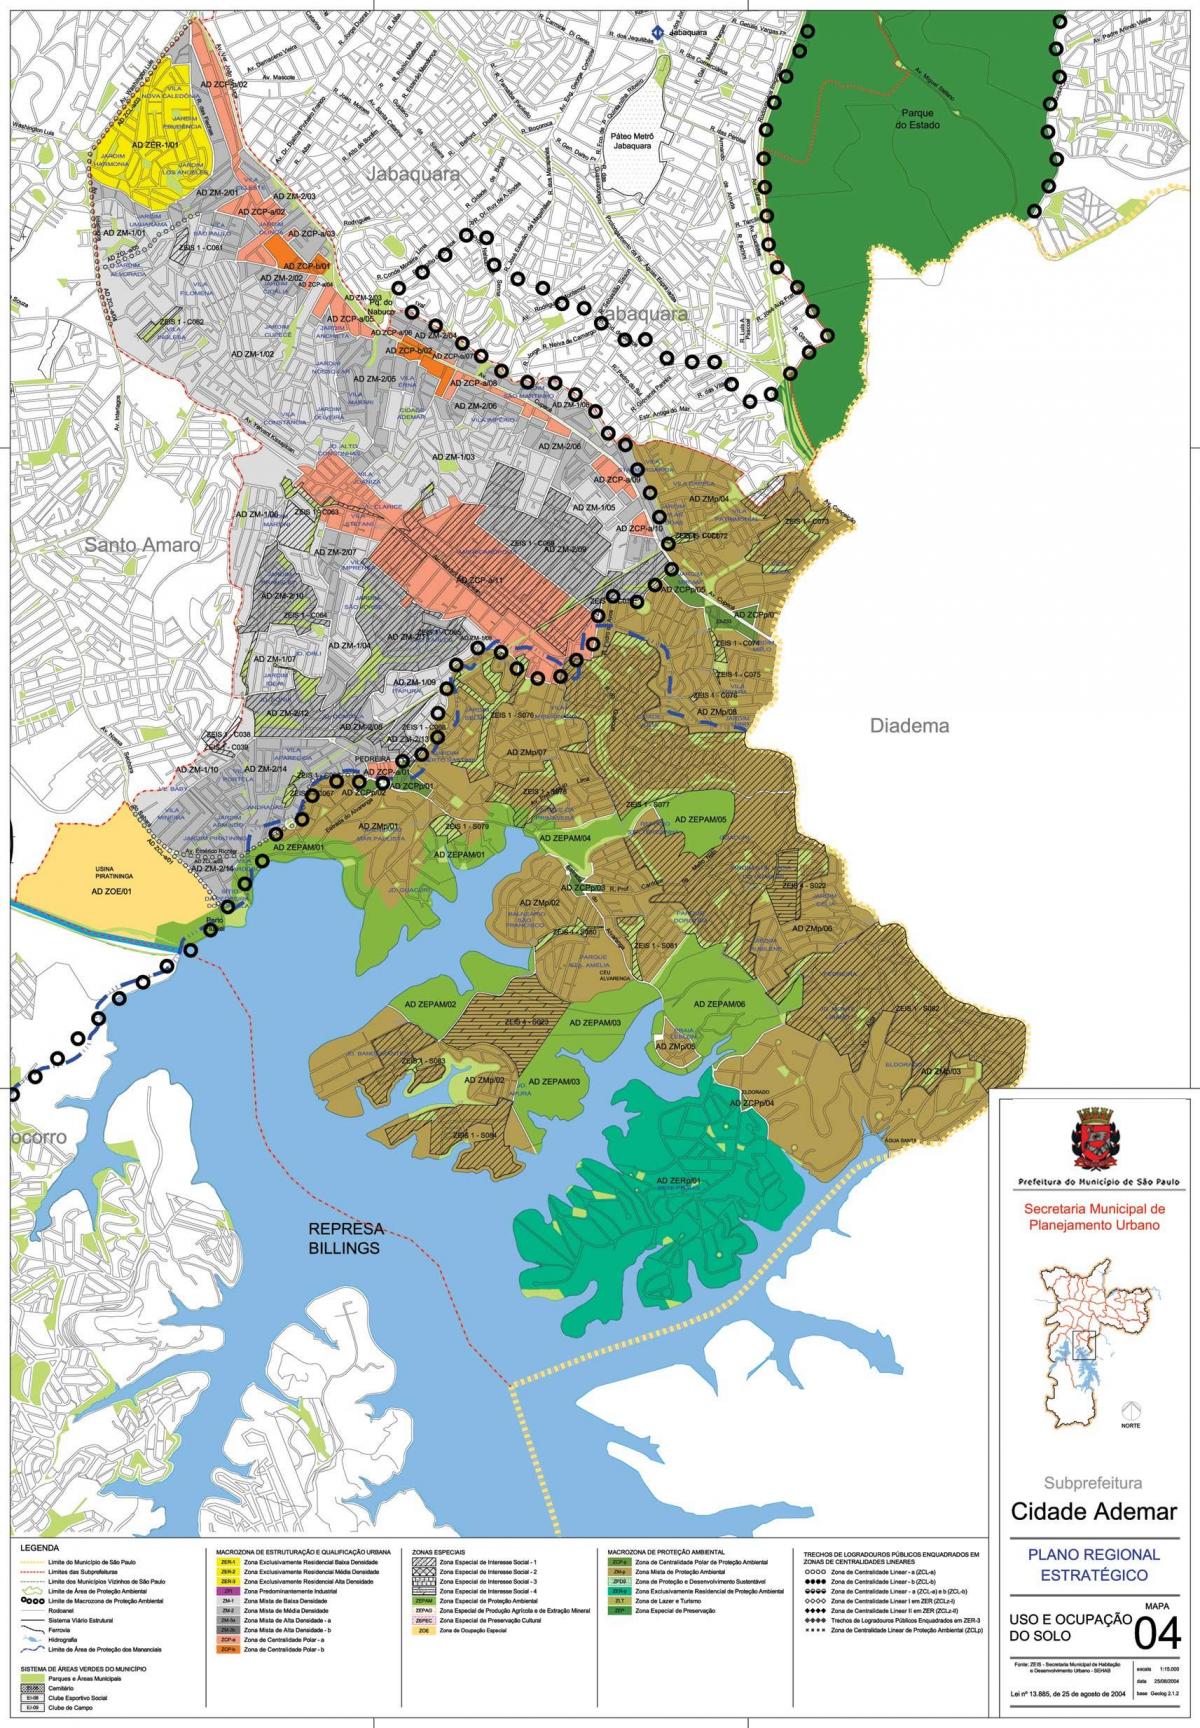 Mapa da Cidade ao ademar de São Paulo - Ocupación do solo